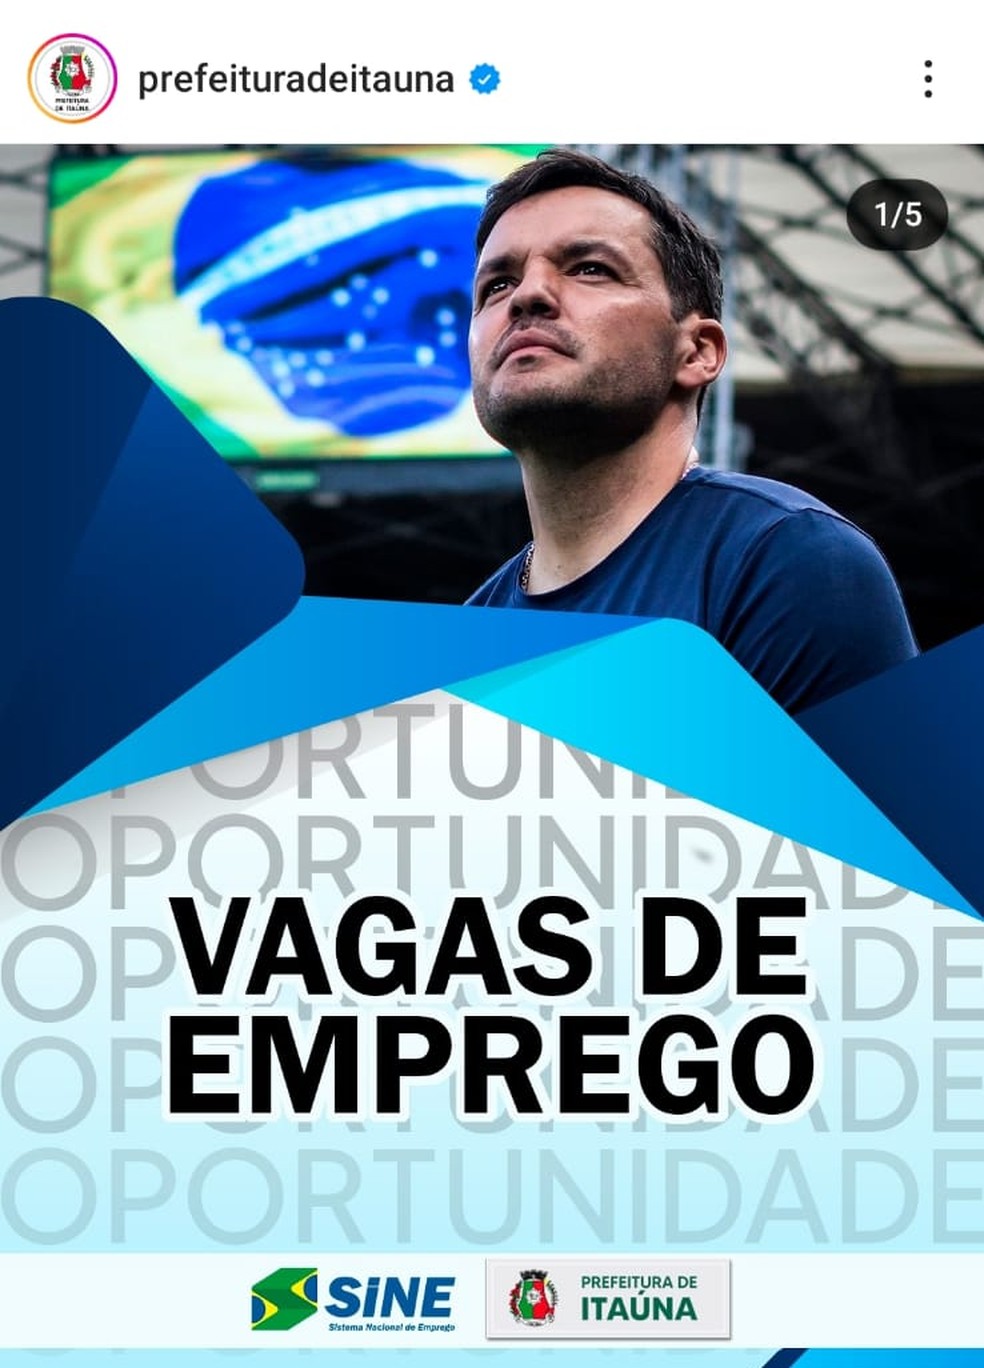 Prefeitura de Itáuna usou foto do ex-técnico do Cruzeiro em anúncio de vagas de emprego — Foto: Reprodução